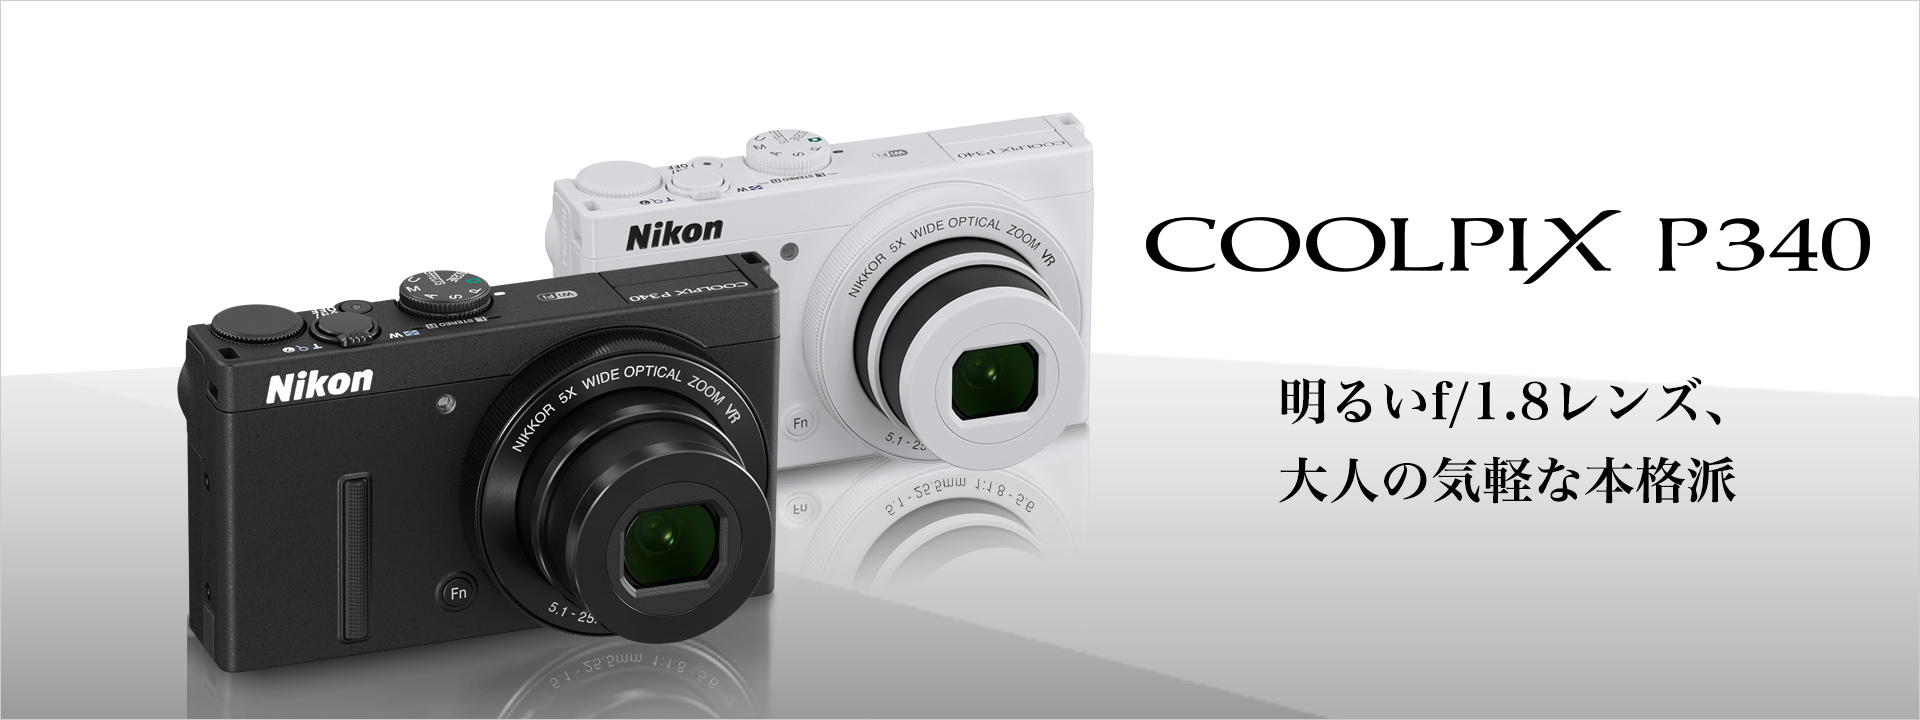 COOLPIX P340 - 概要 | コンパクトデジタルカメラ | ニコンイメージング